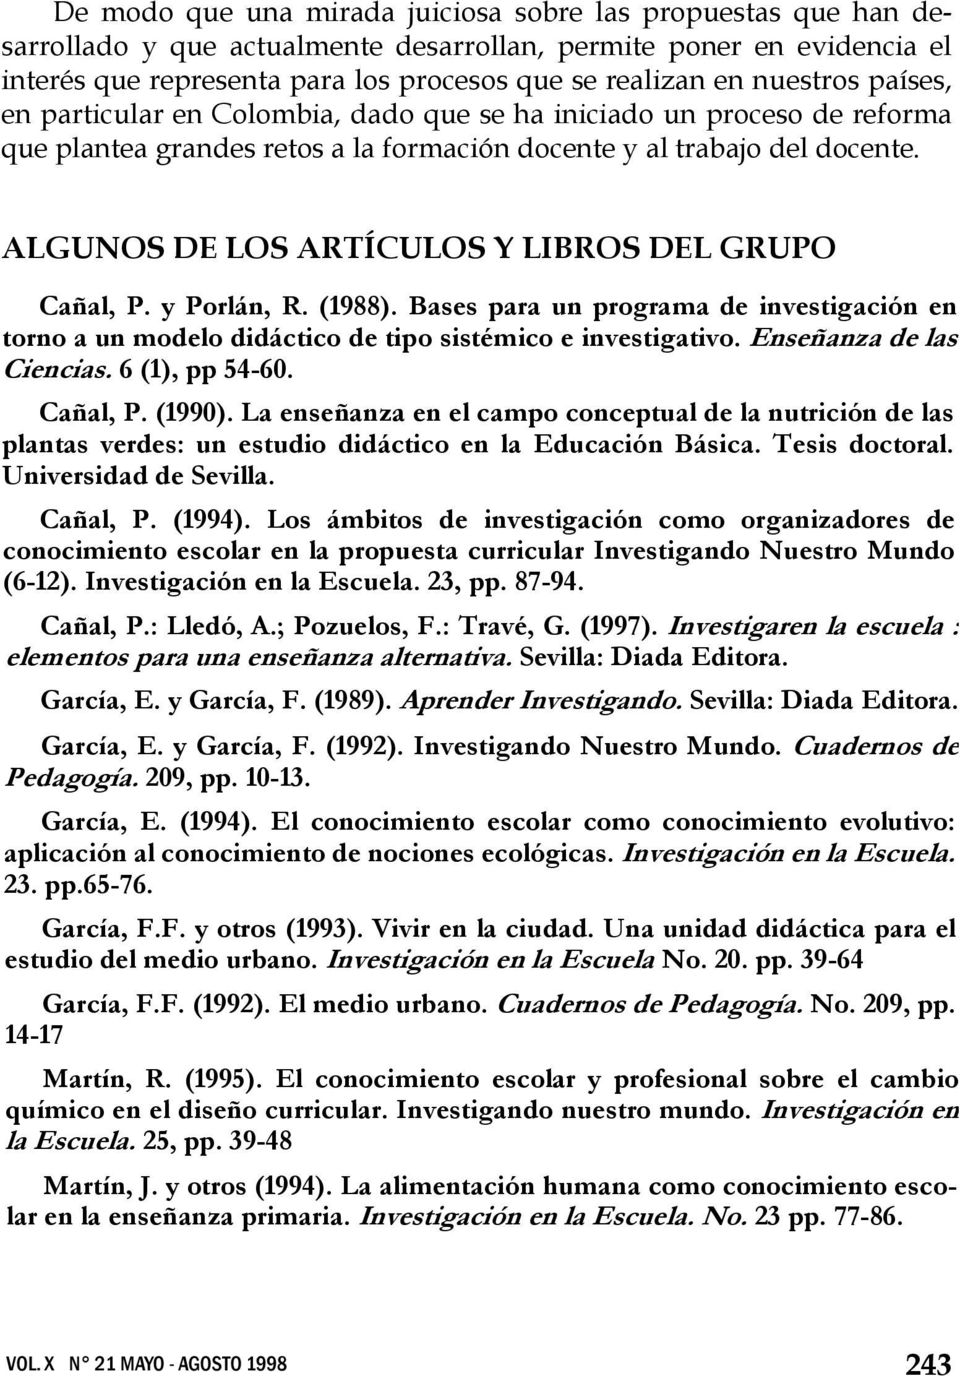 ALGUNOS DE LOS ARTÍCULOS Y LIBROS DEL GRUPO Cañal, P. y Porlán, R. (1988). Bases para un programa de investigación en torno a un modelo didáctico de tipo sistémico e investigativo.